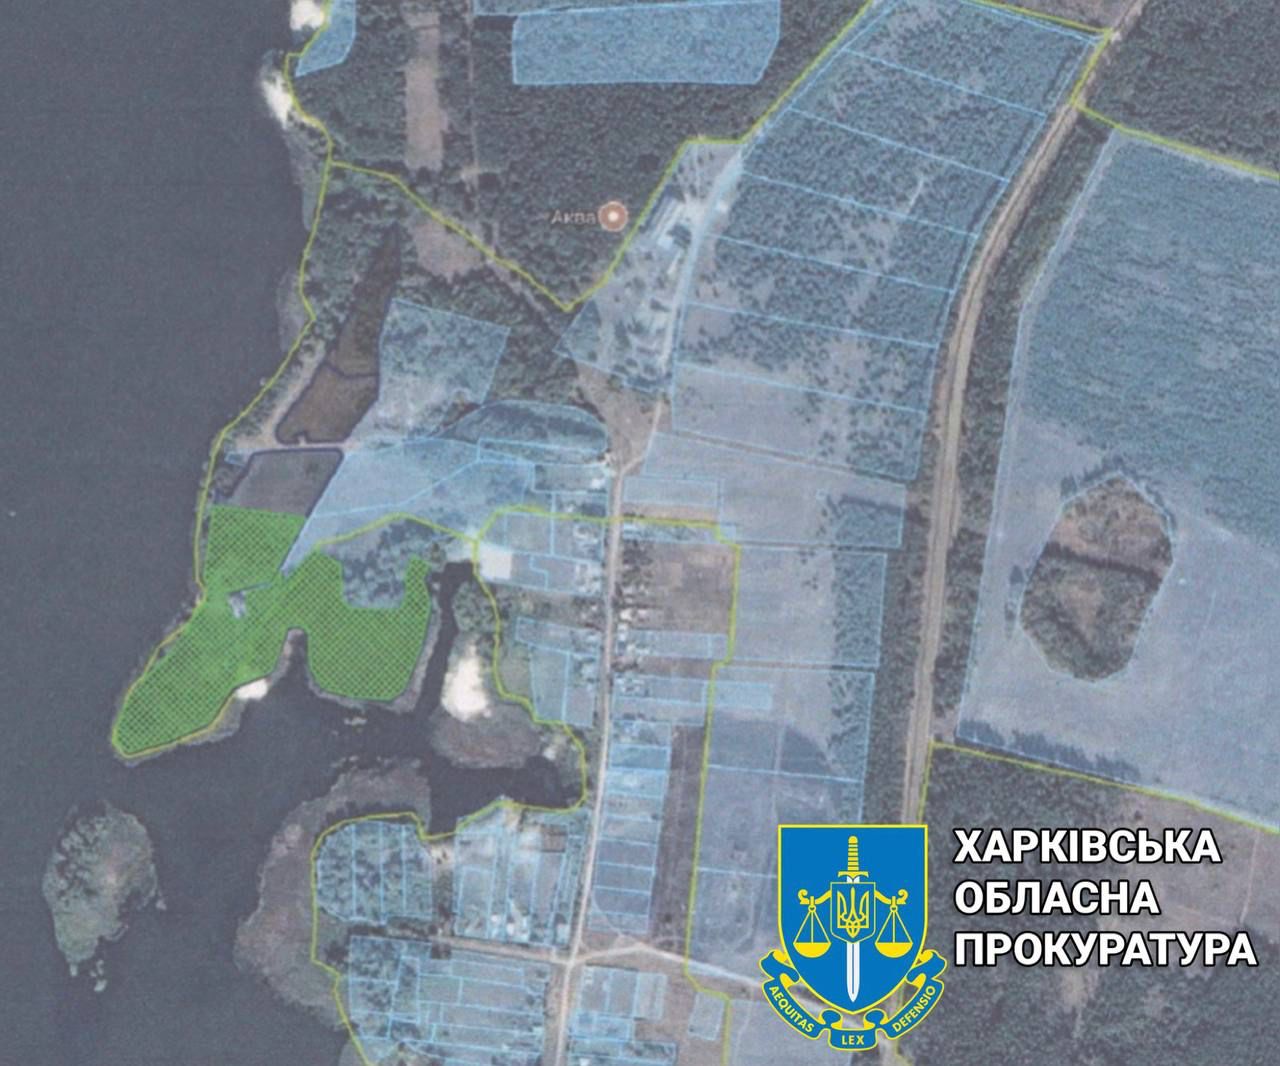 Прокуратура повернула державі земельну ділянку поблизу Печенізького водосховища вартістю понад 20 млн грн